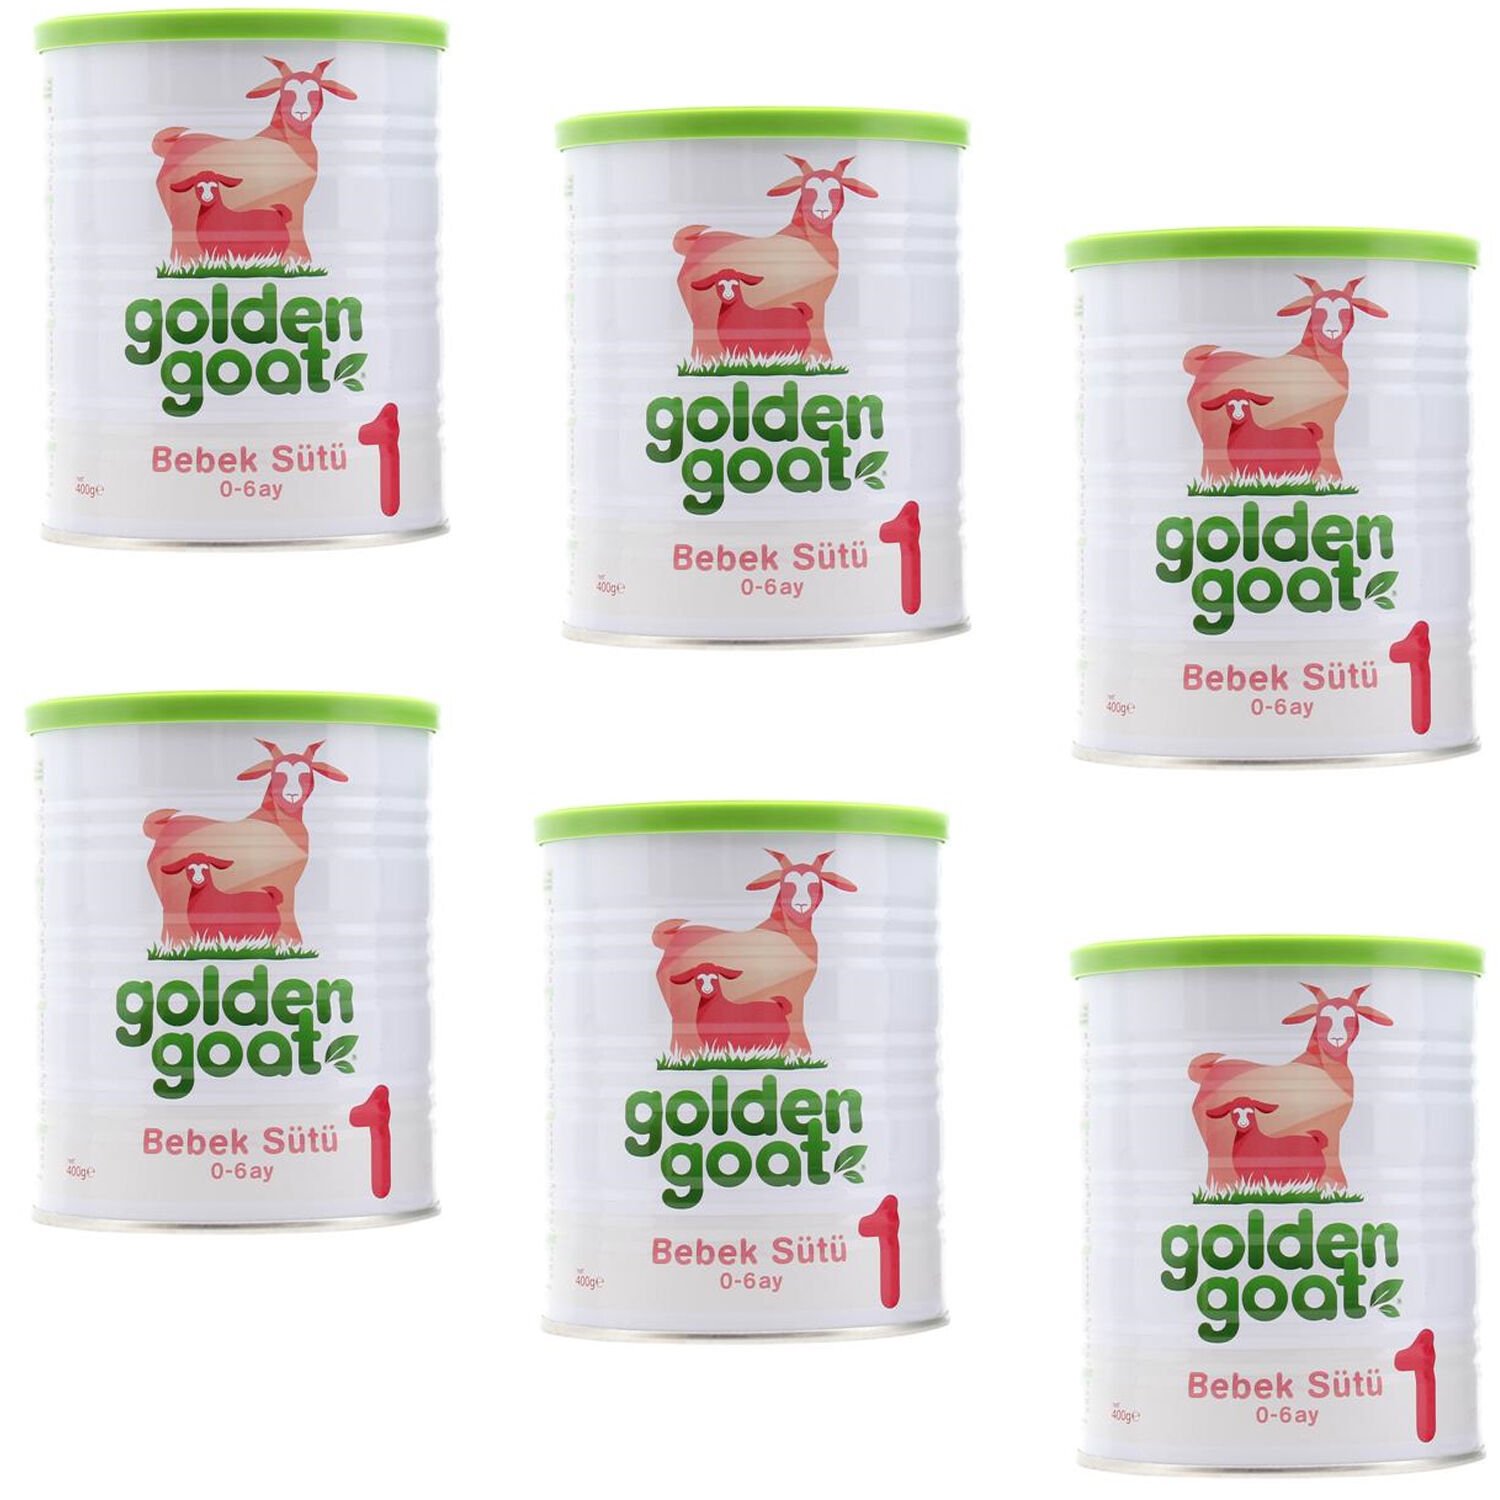 Golden Goat 1 Keçi Sütü Bazlı Bebek Sütü 400 gr 6 ADET